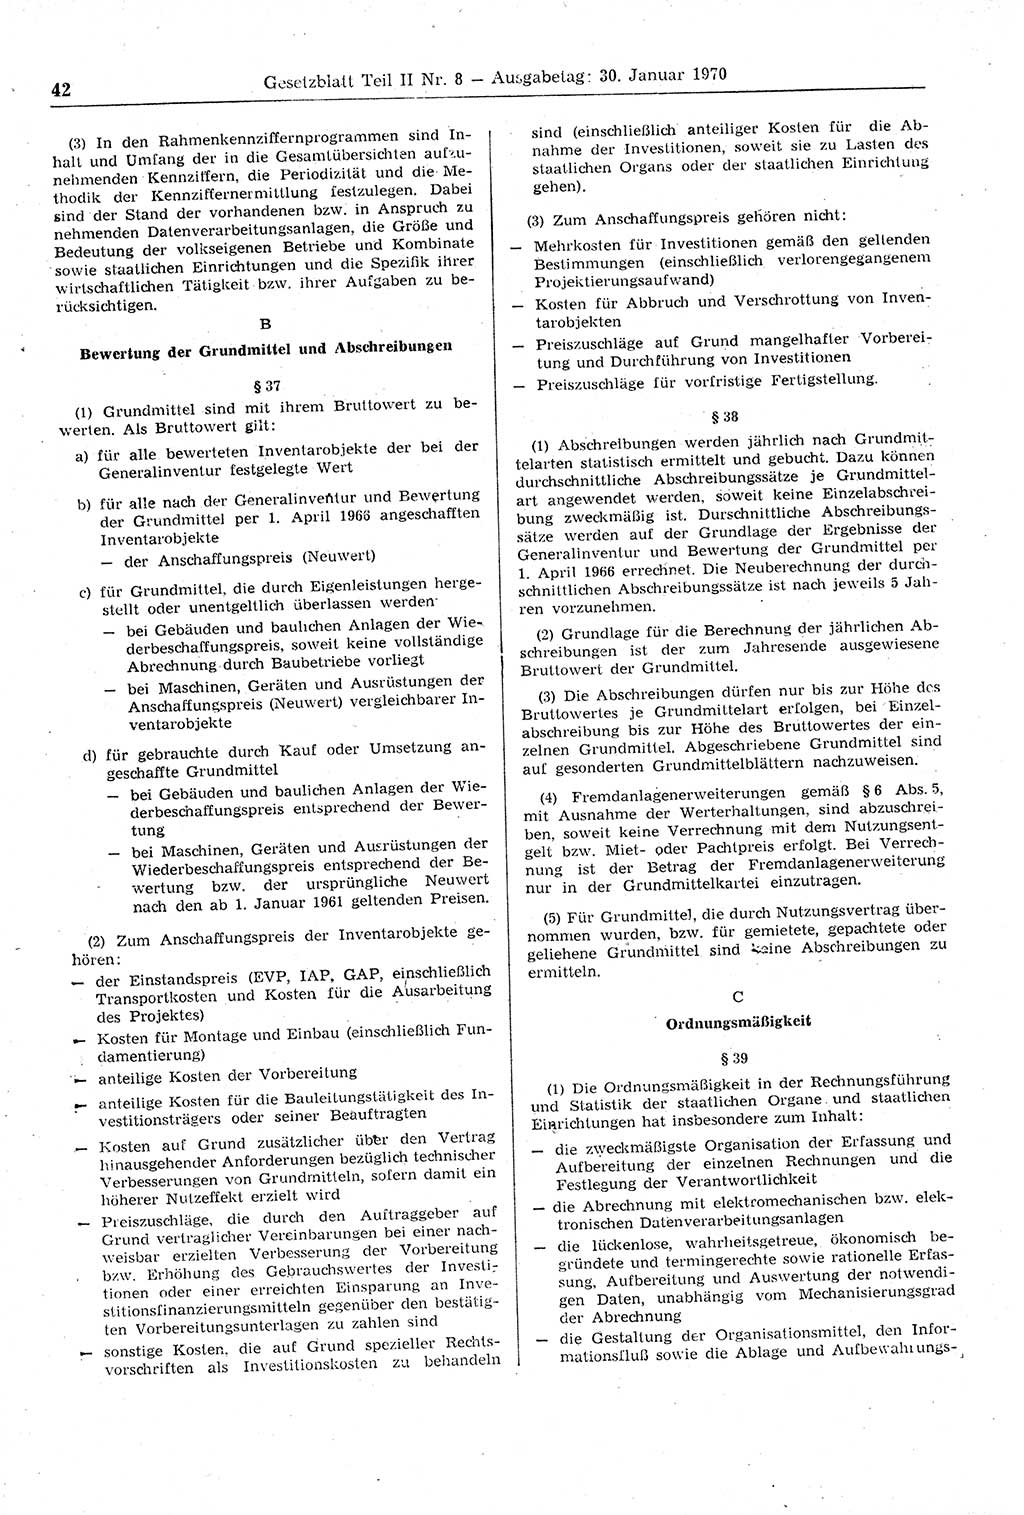 Gesetzblatt (GBl.) der Deutschen Demokratischen Republik (DDR) Teil ⅠⅠ 1970, Seite 42 (GBl. DDR ⅠⅠ 1970, S. 42)